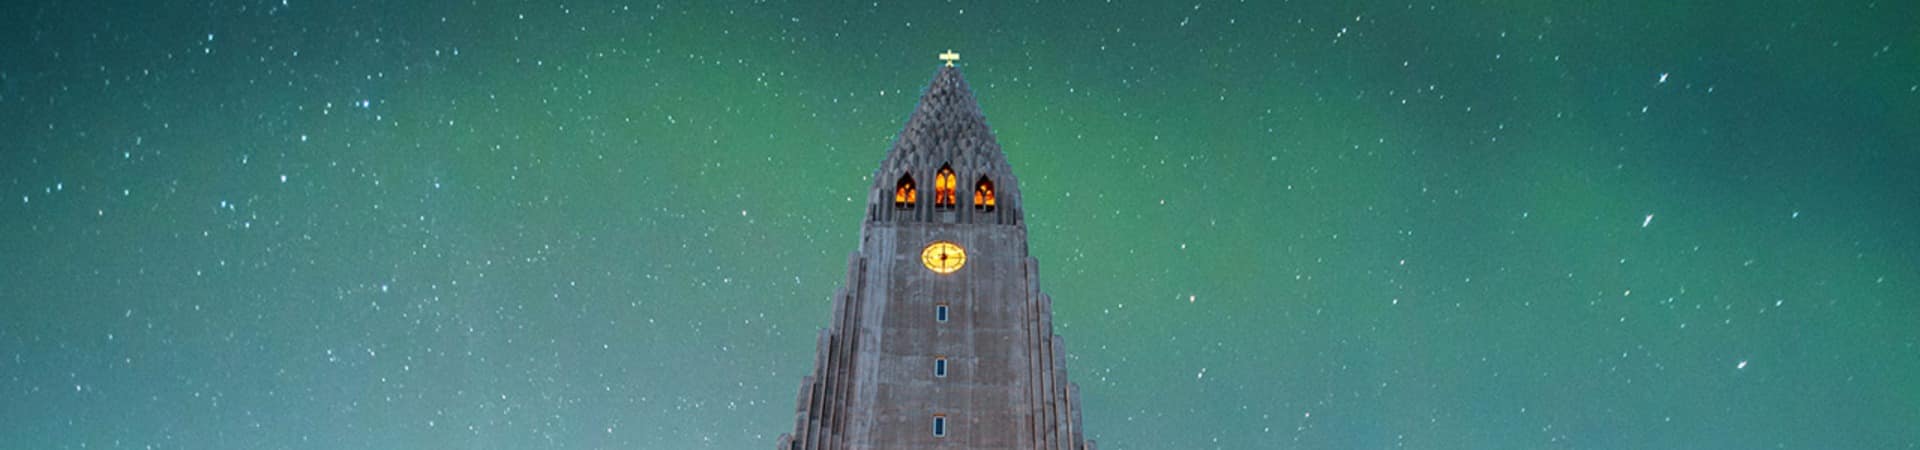 Islandia reykjavik hallgrimskirkja igreja